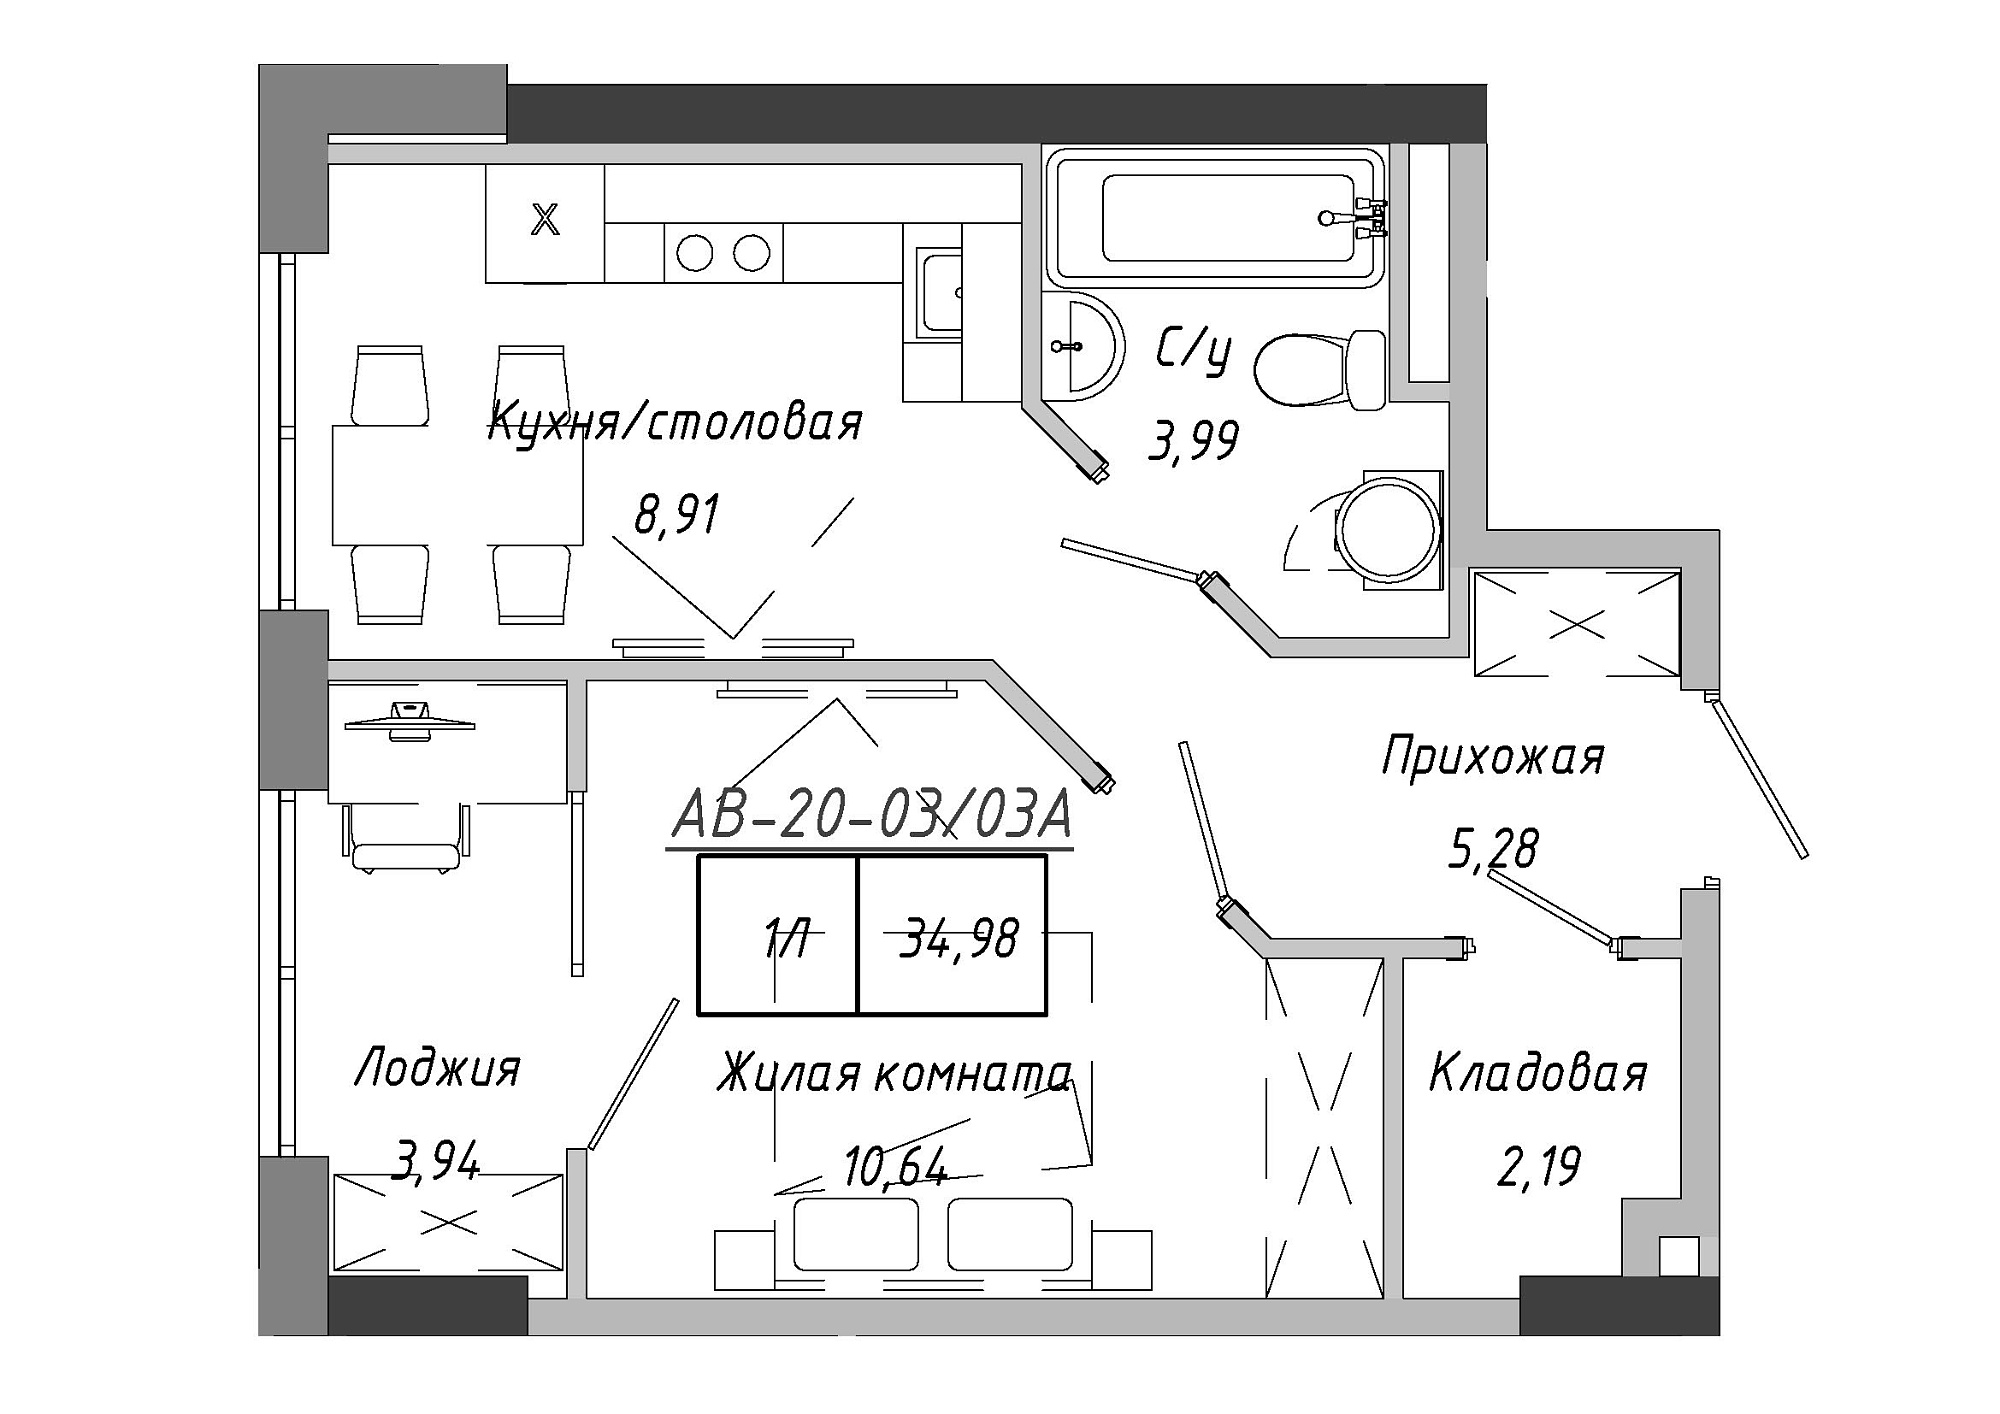 Планировка 1-к квартира площей 34.98м2, AB-20-03/0003а.